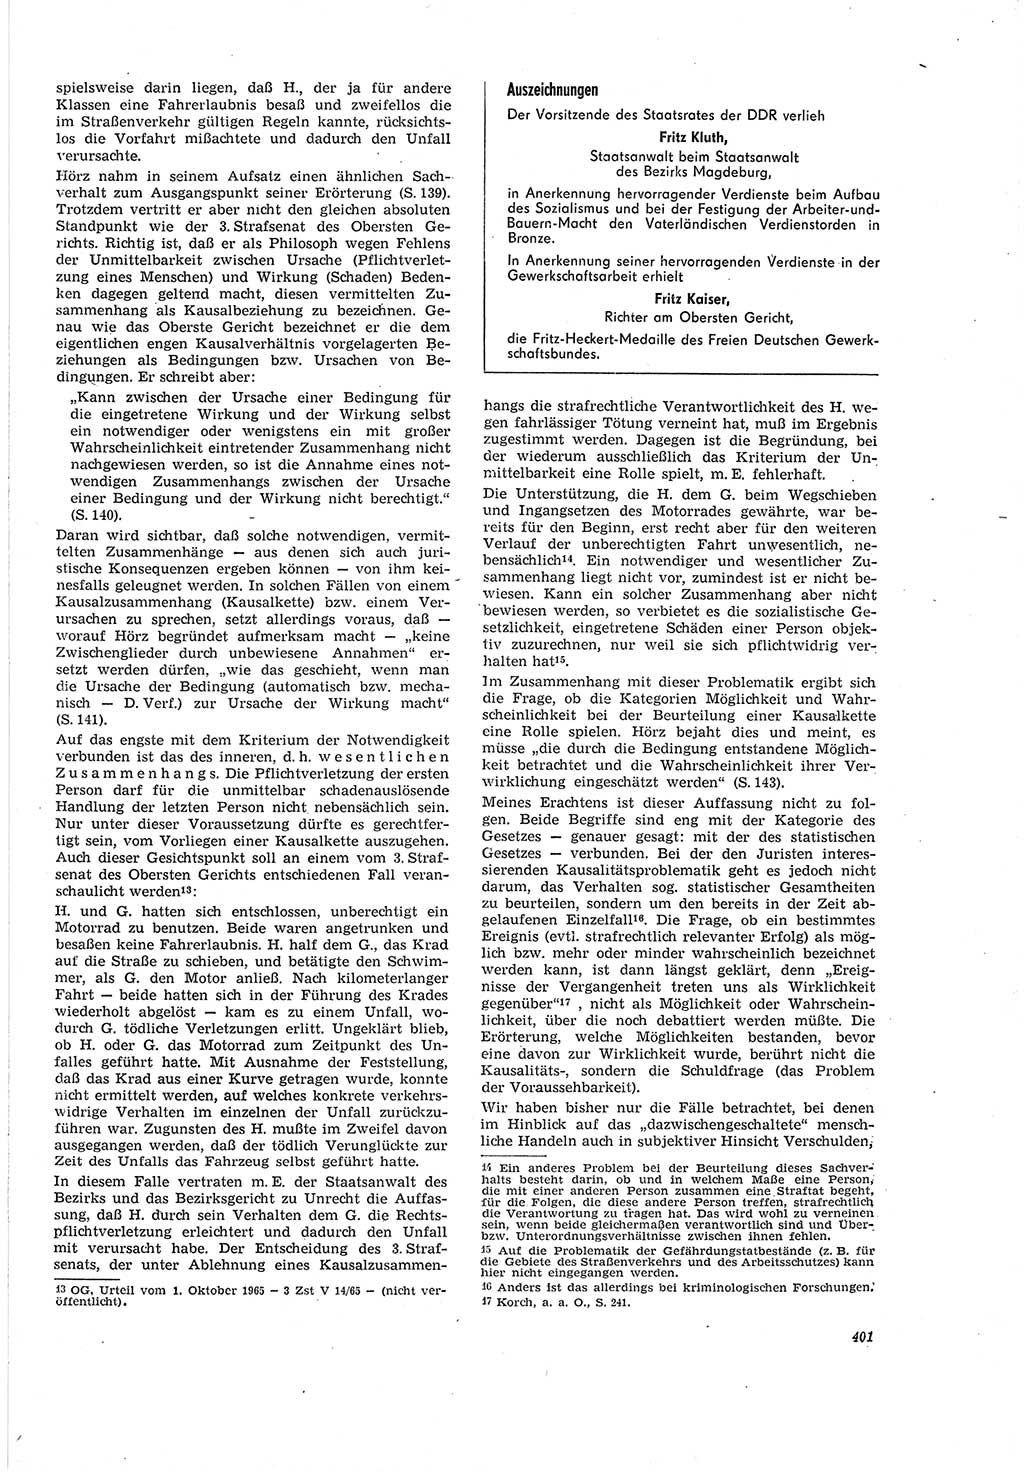 Neue Justiz (NJ), Zeitschrift für Recht und Rechtswissenschaft [Deutsche Demokratische Republik (DDR)], 20. Jahrgang 1966, Seite 401 (NJ DDR 1966, S. 401)